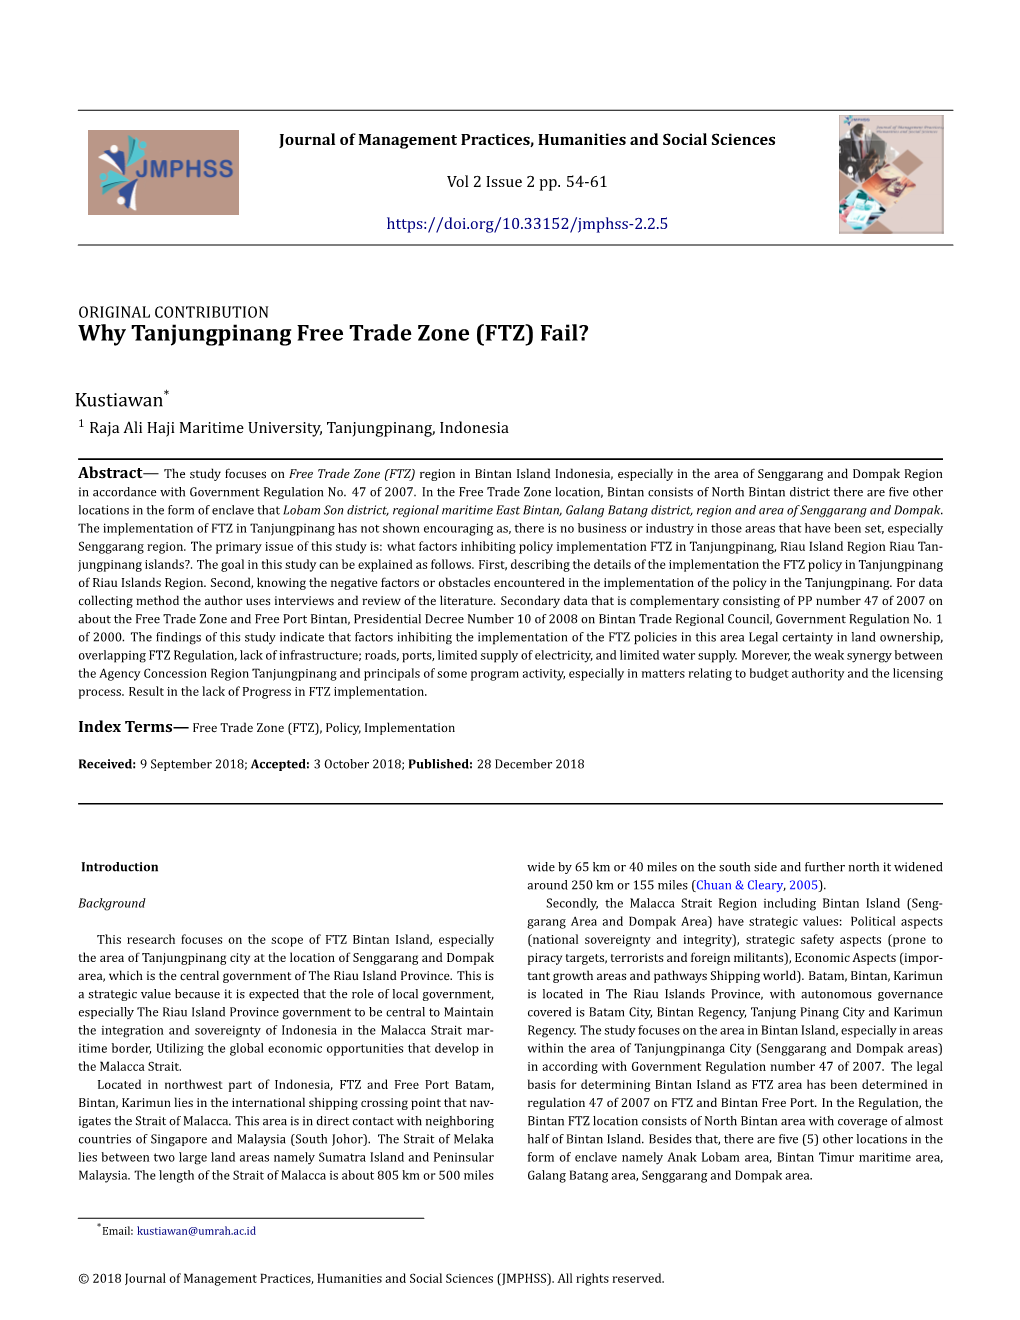 Why Tanjungpinang Free Trade Zone (FTZ) Fail?